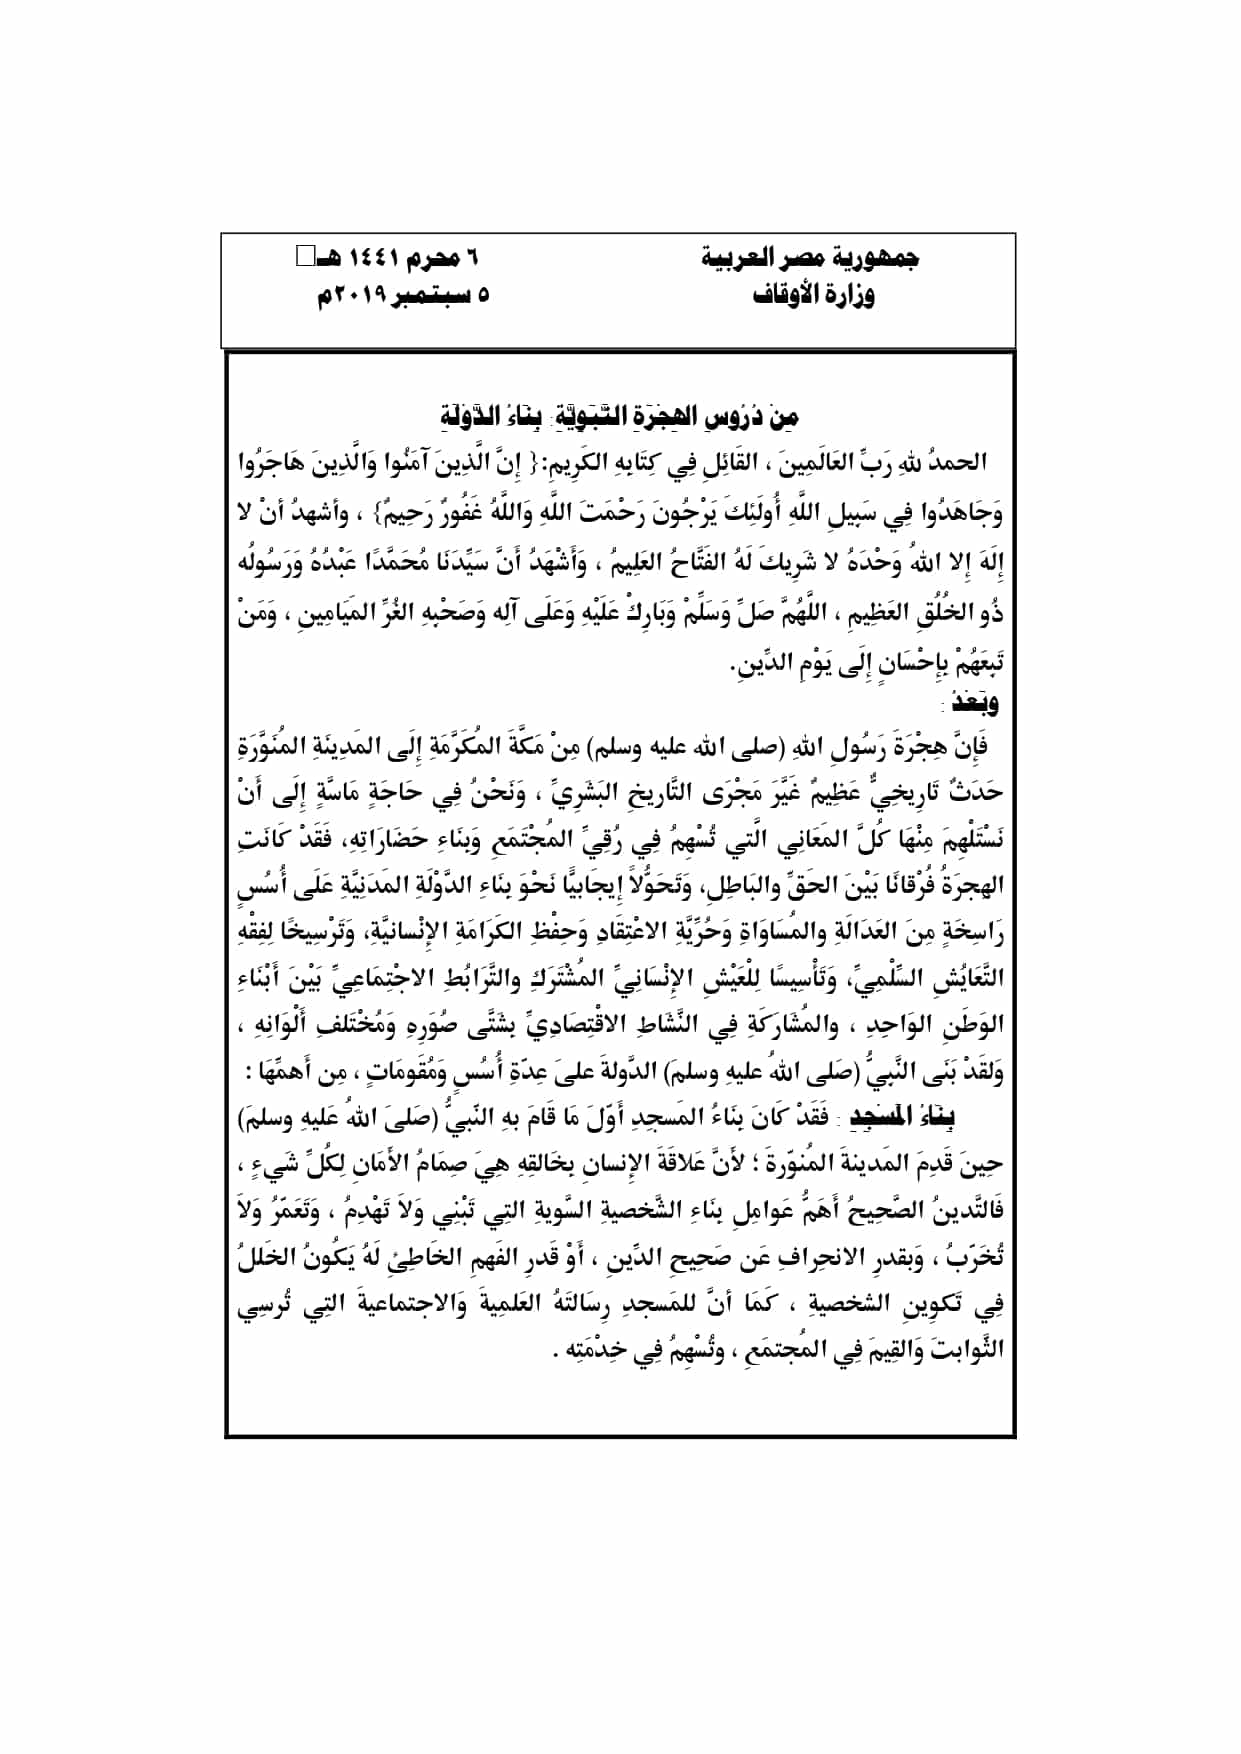 بناء الدولة : من دروس الهجرة : خطبة الجمعة القادمة pdf لوزارة الأوقاف المصرية